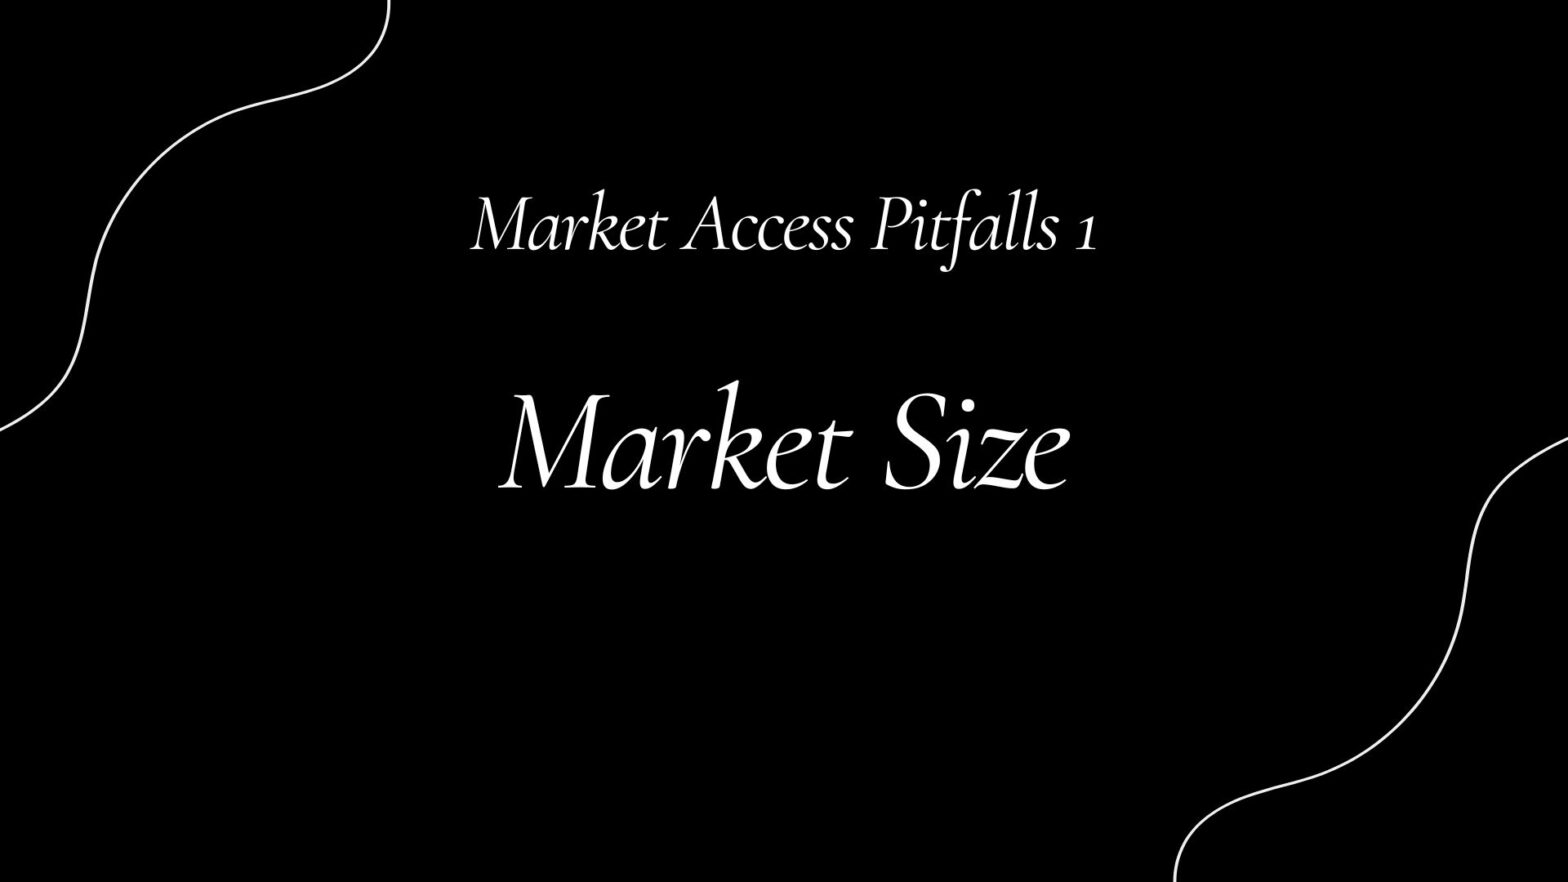 Market Access Pitfalls 1: Market Size